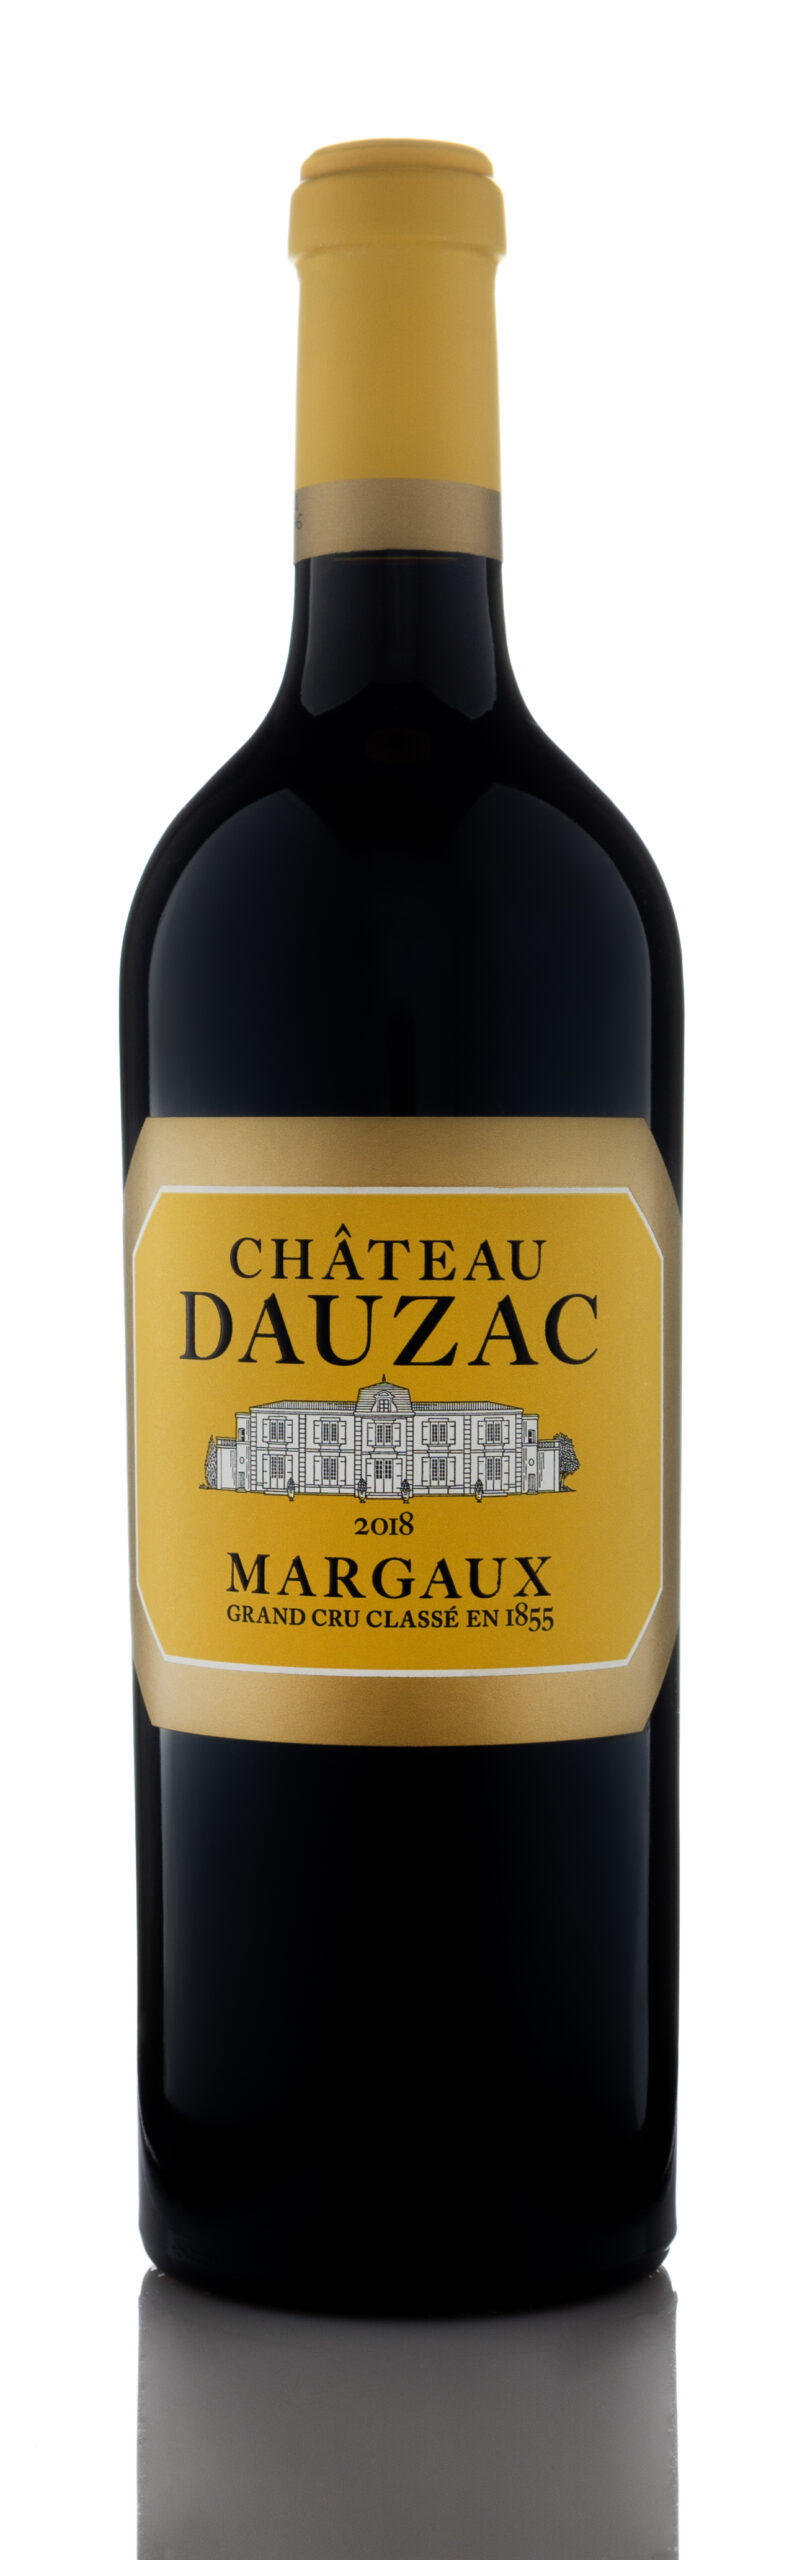 2018 Chateau Dauzac, Margaux